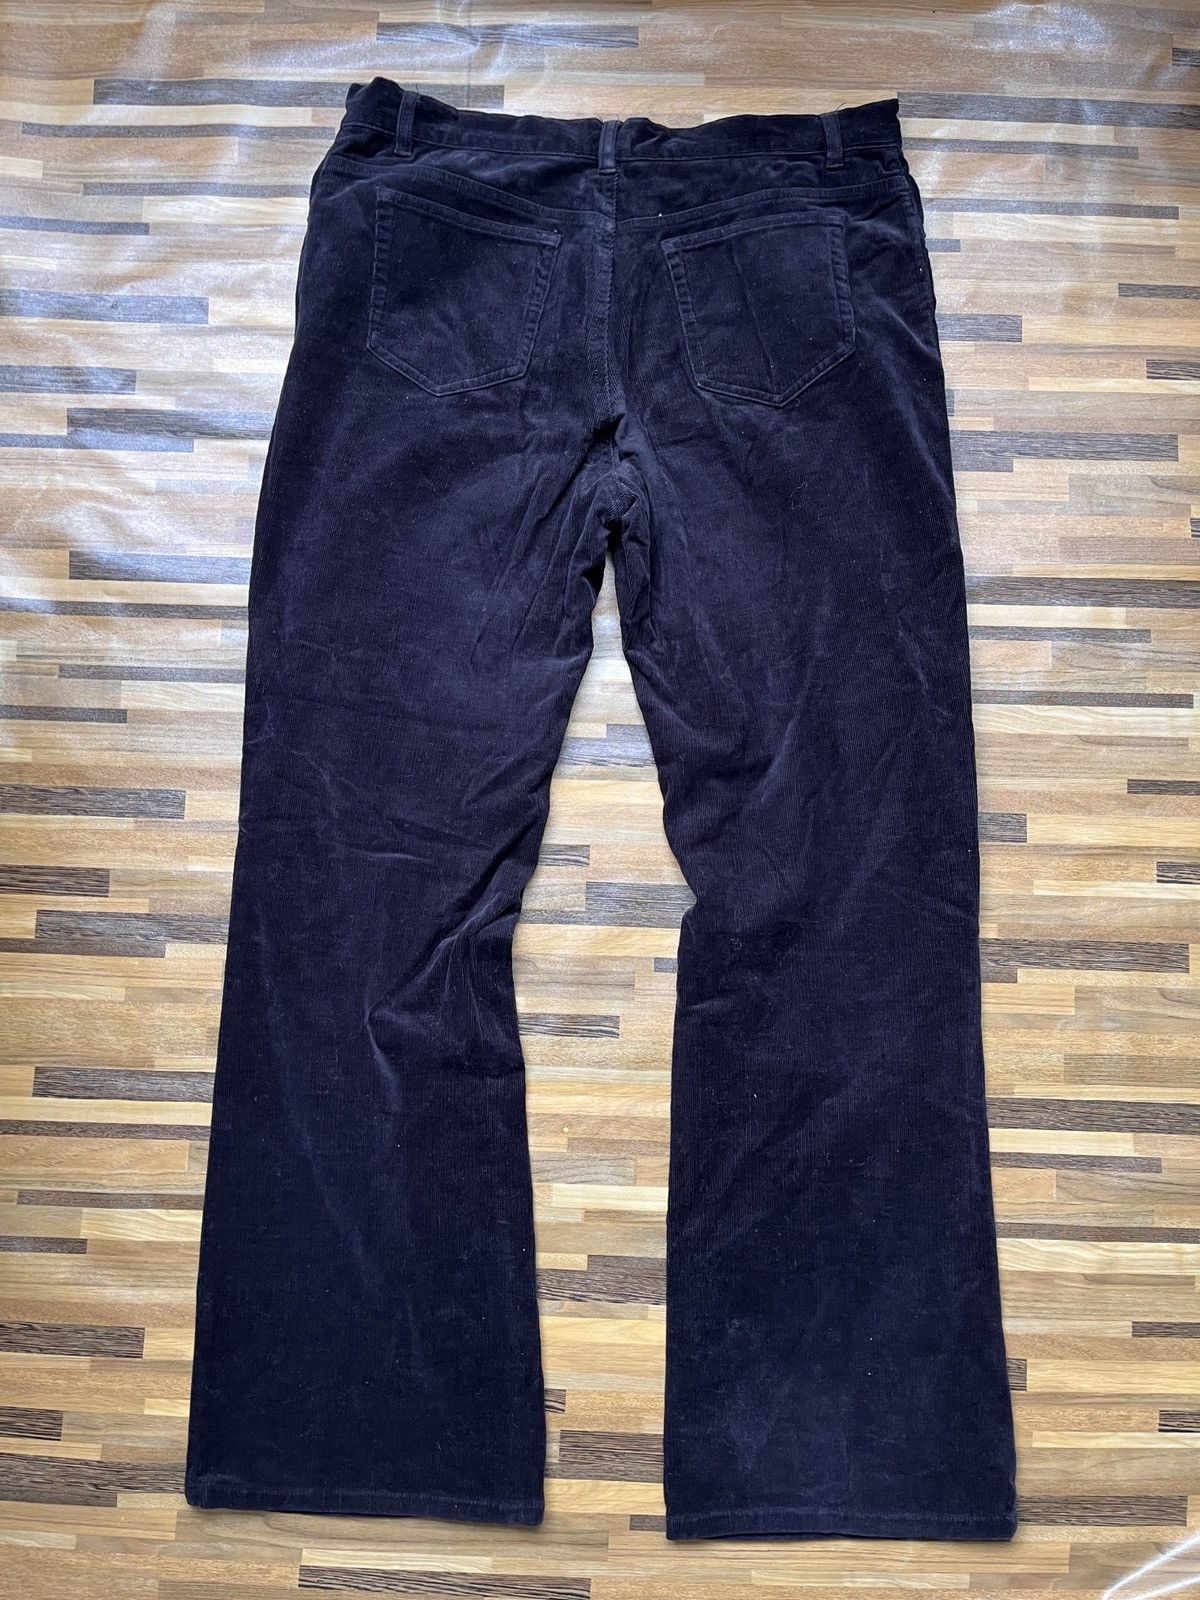 Issey Miyake - IY Basics Flare Denim Jeans Boot Cut Japanese - 16